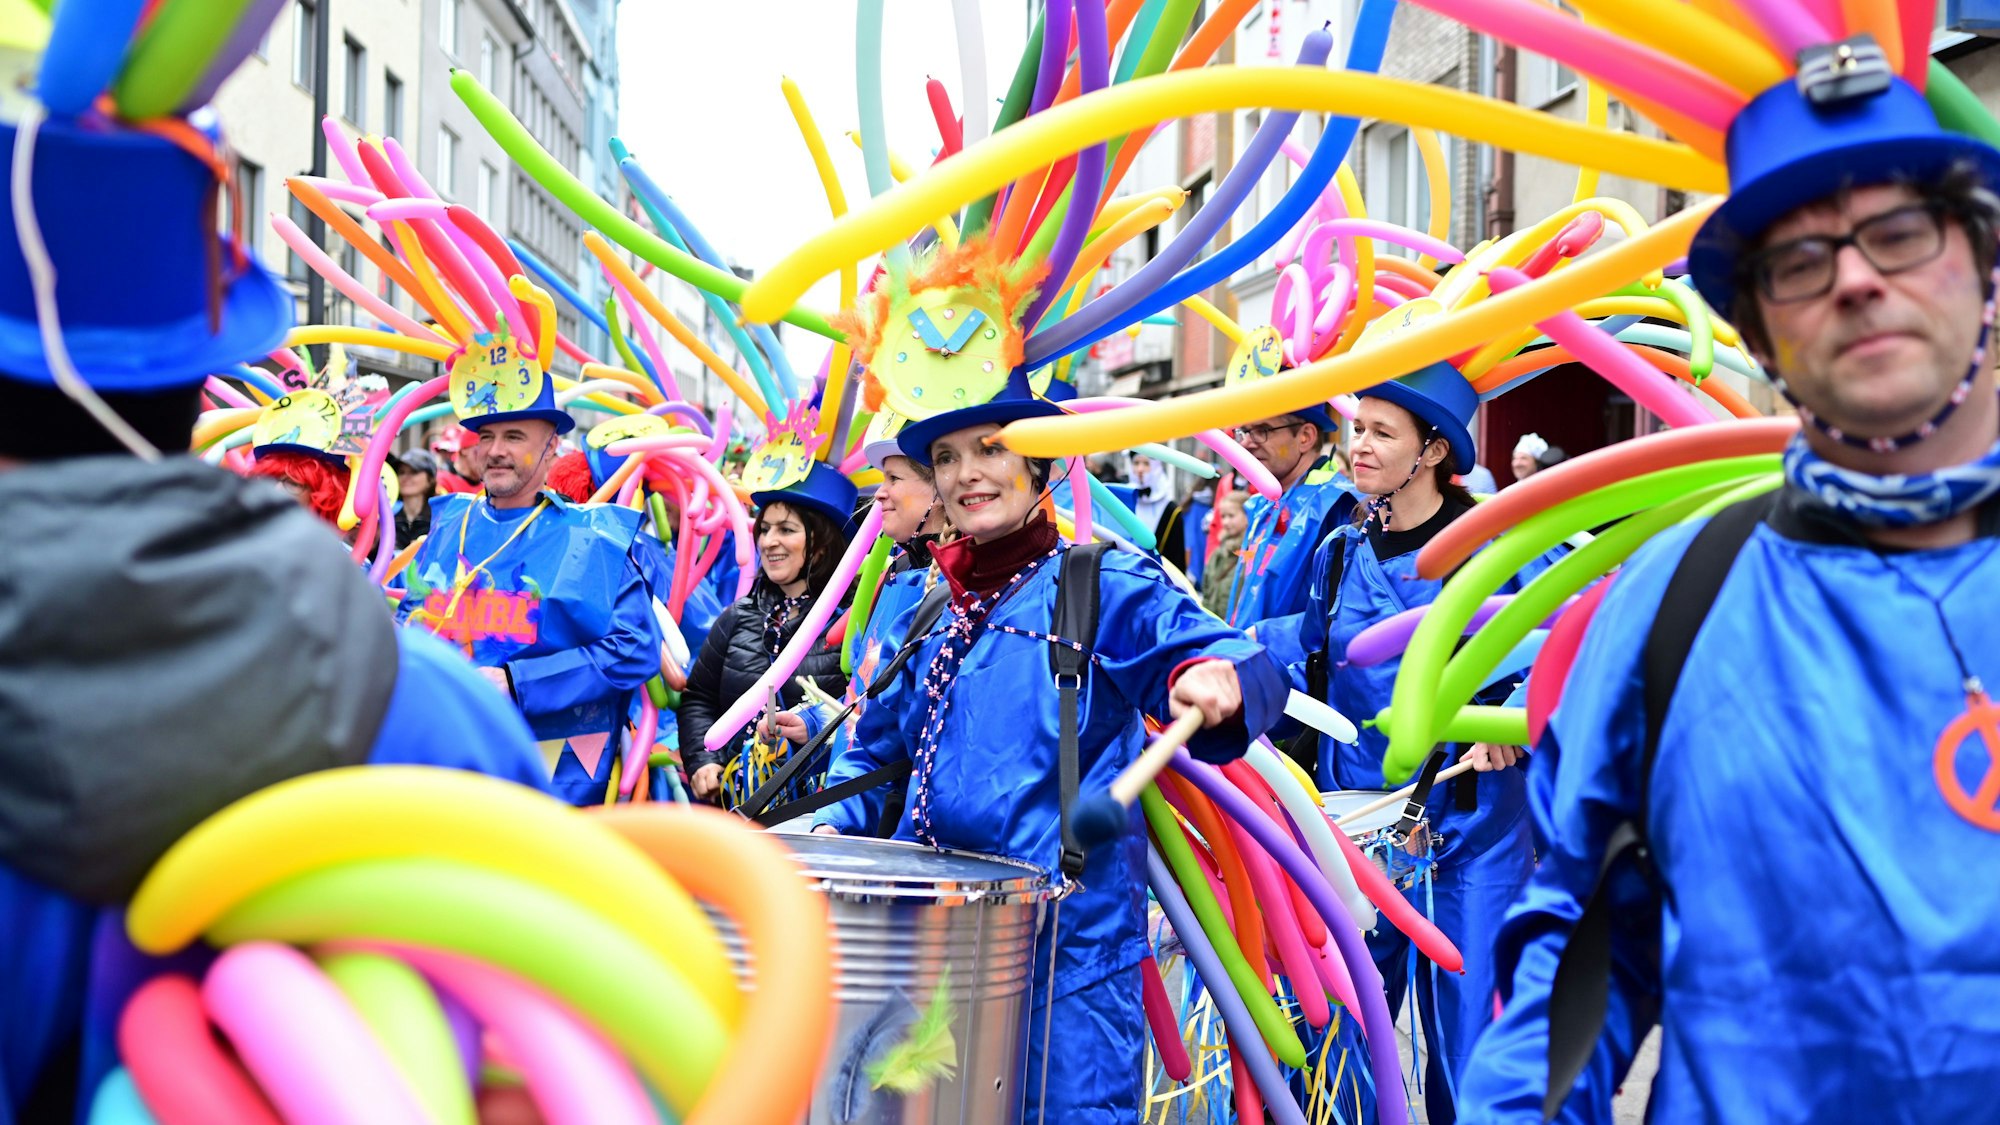 Bunt verkleidete Karnevalisten ziehen durch die Kölner Straßen.